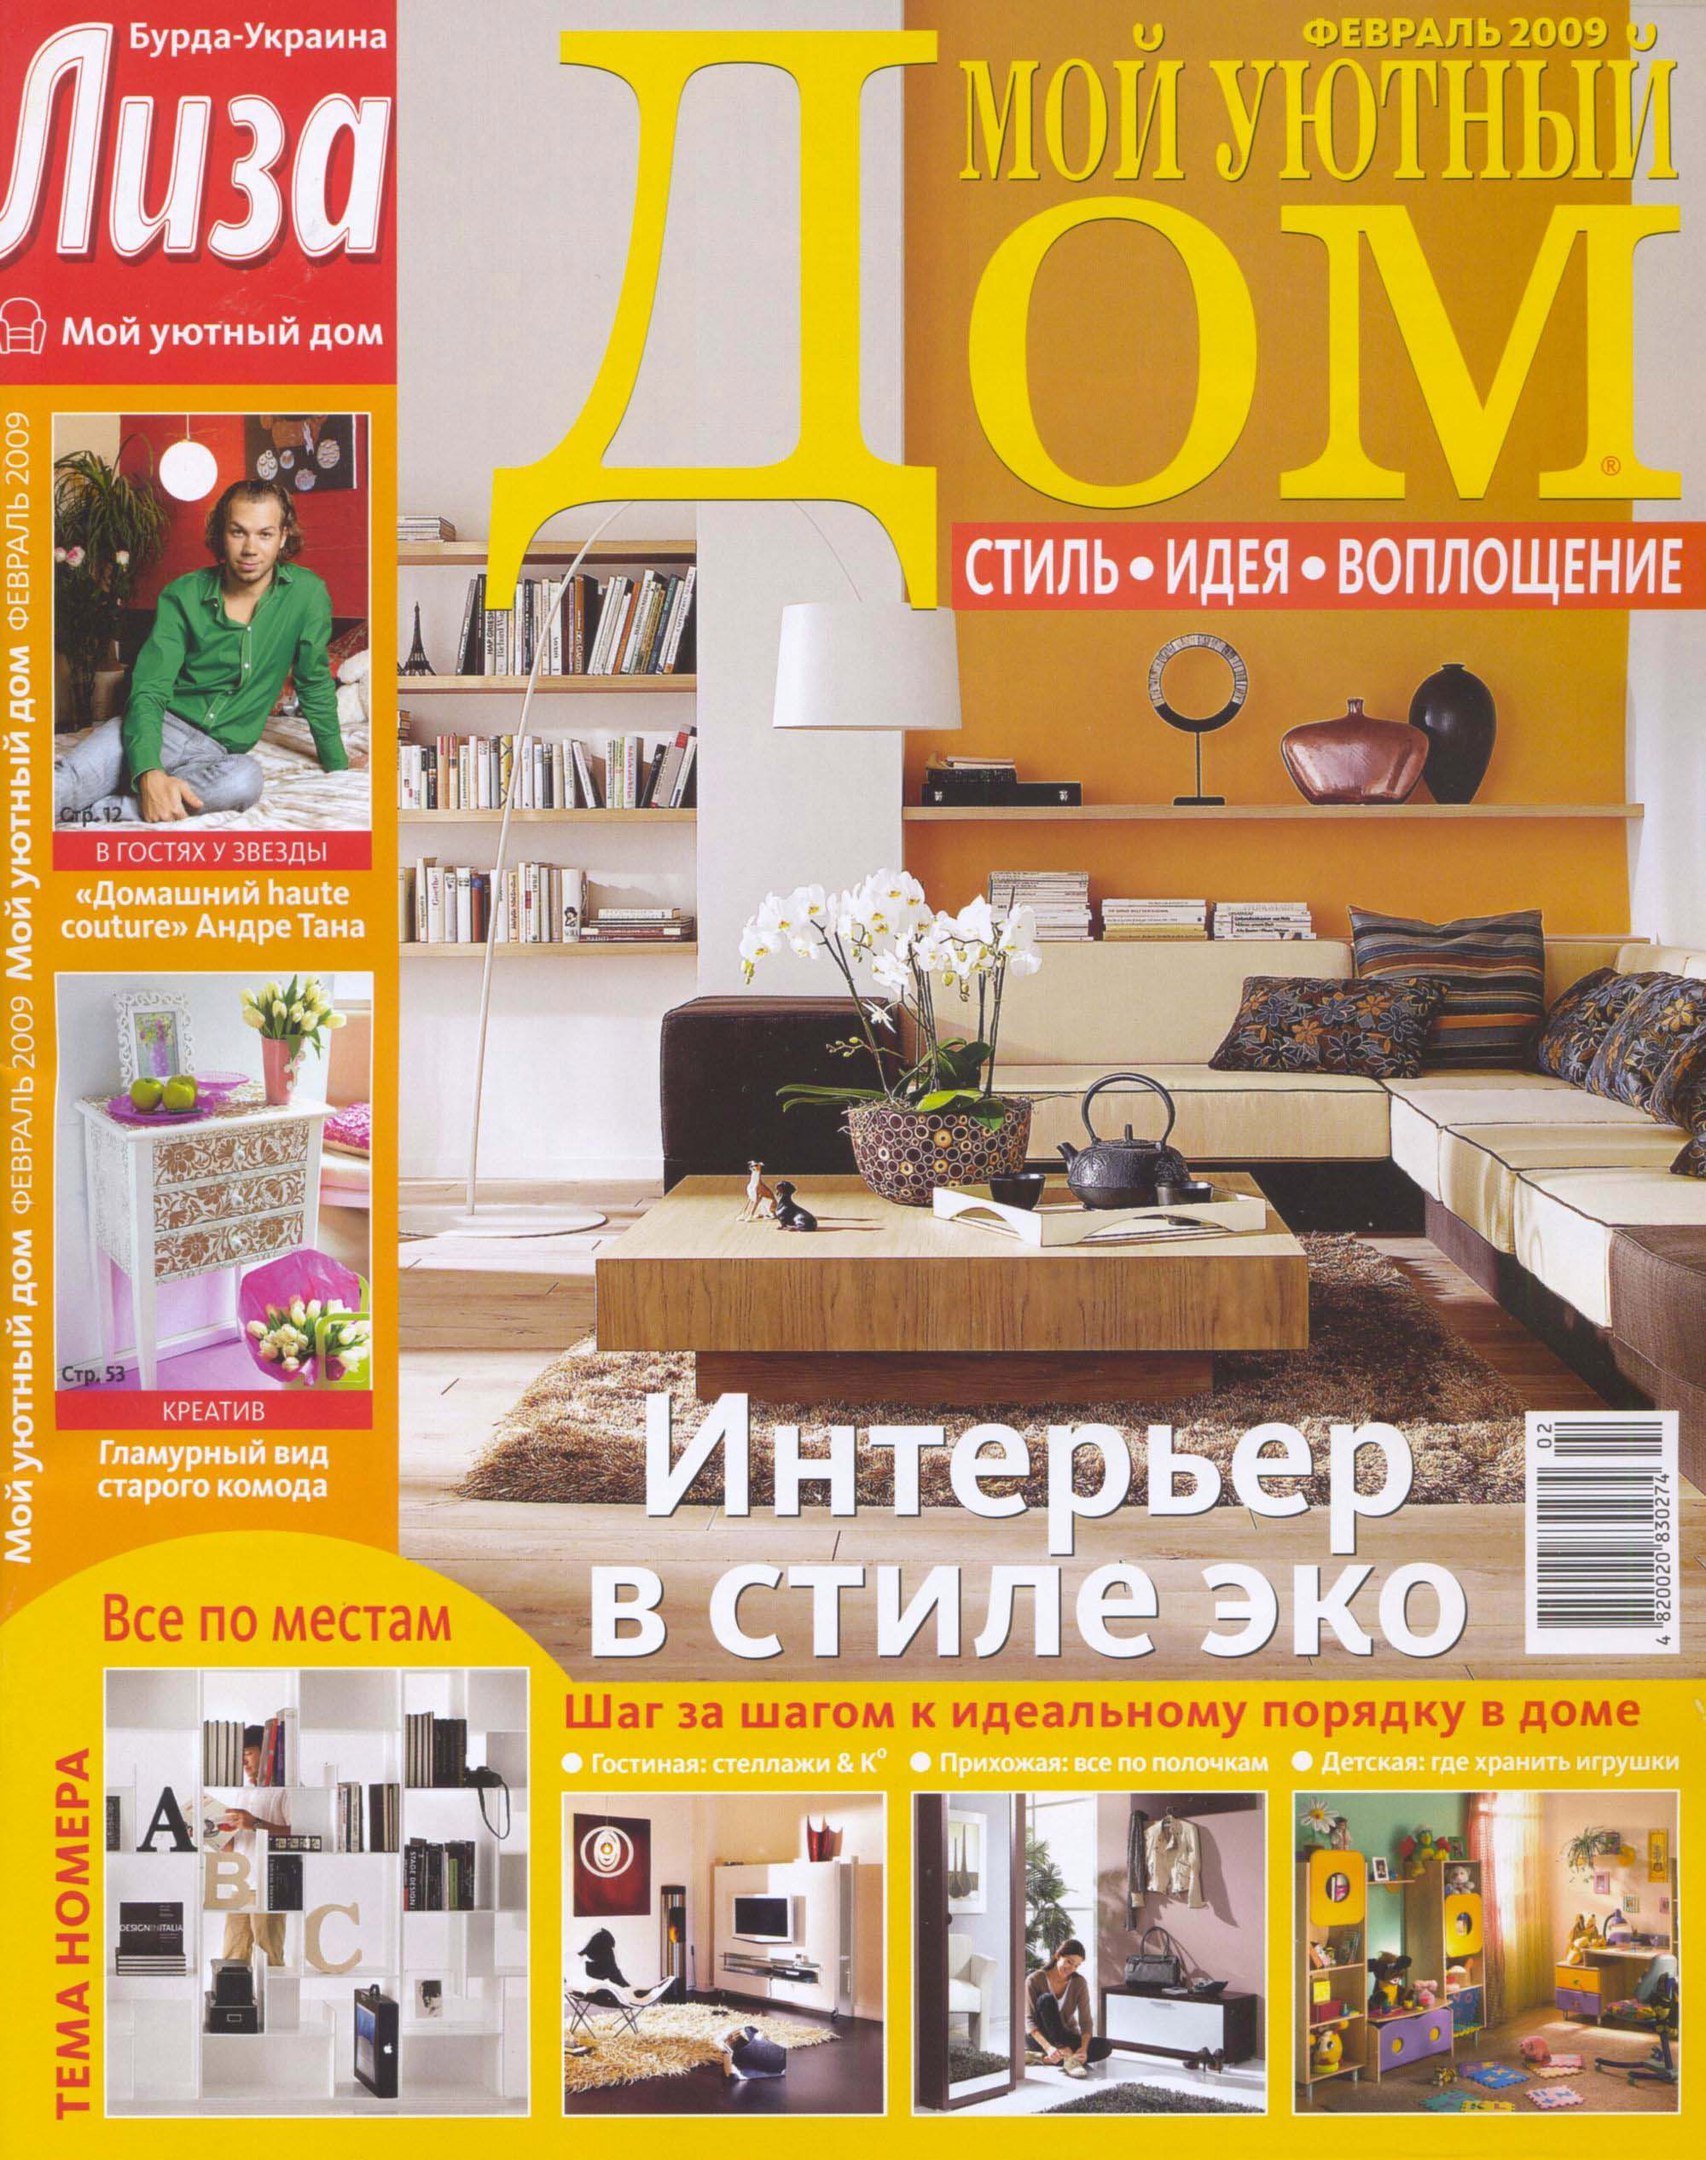 Мой уютный дом журнал. Журналы о доме и уюте. Журнал дом 2009.